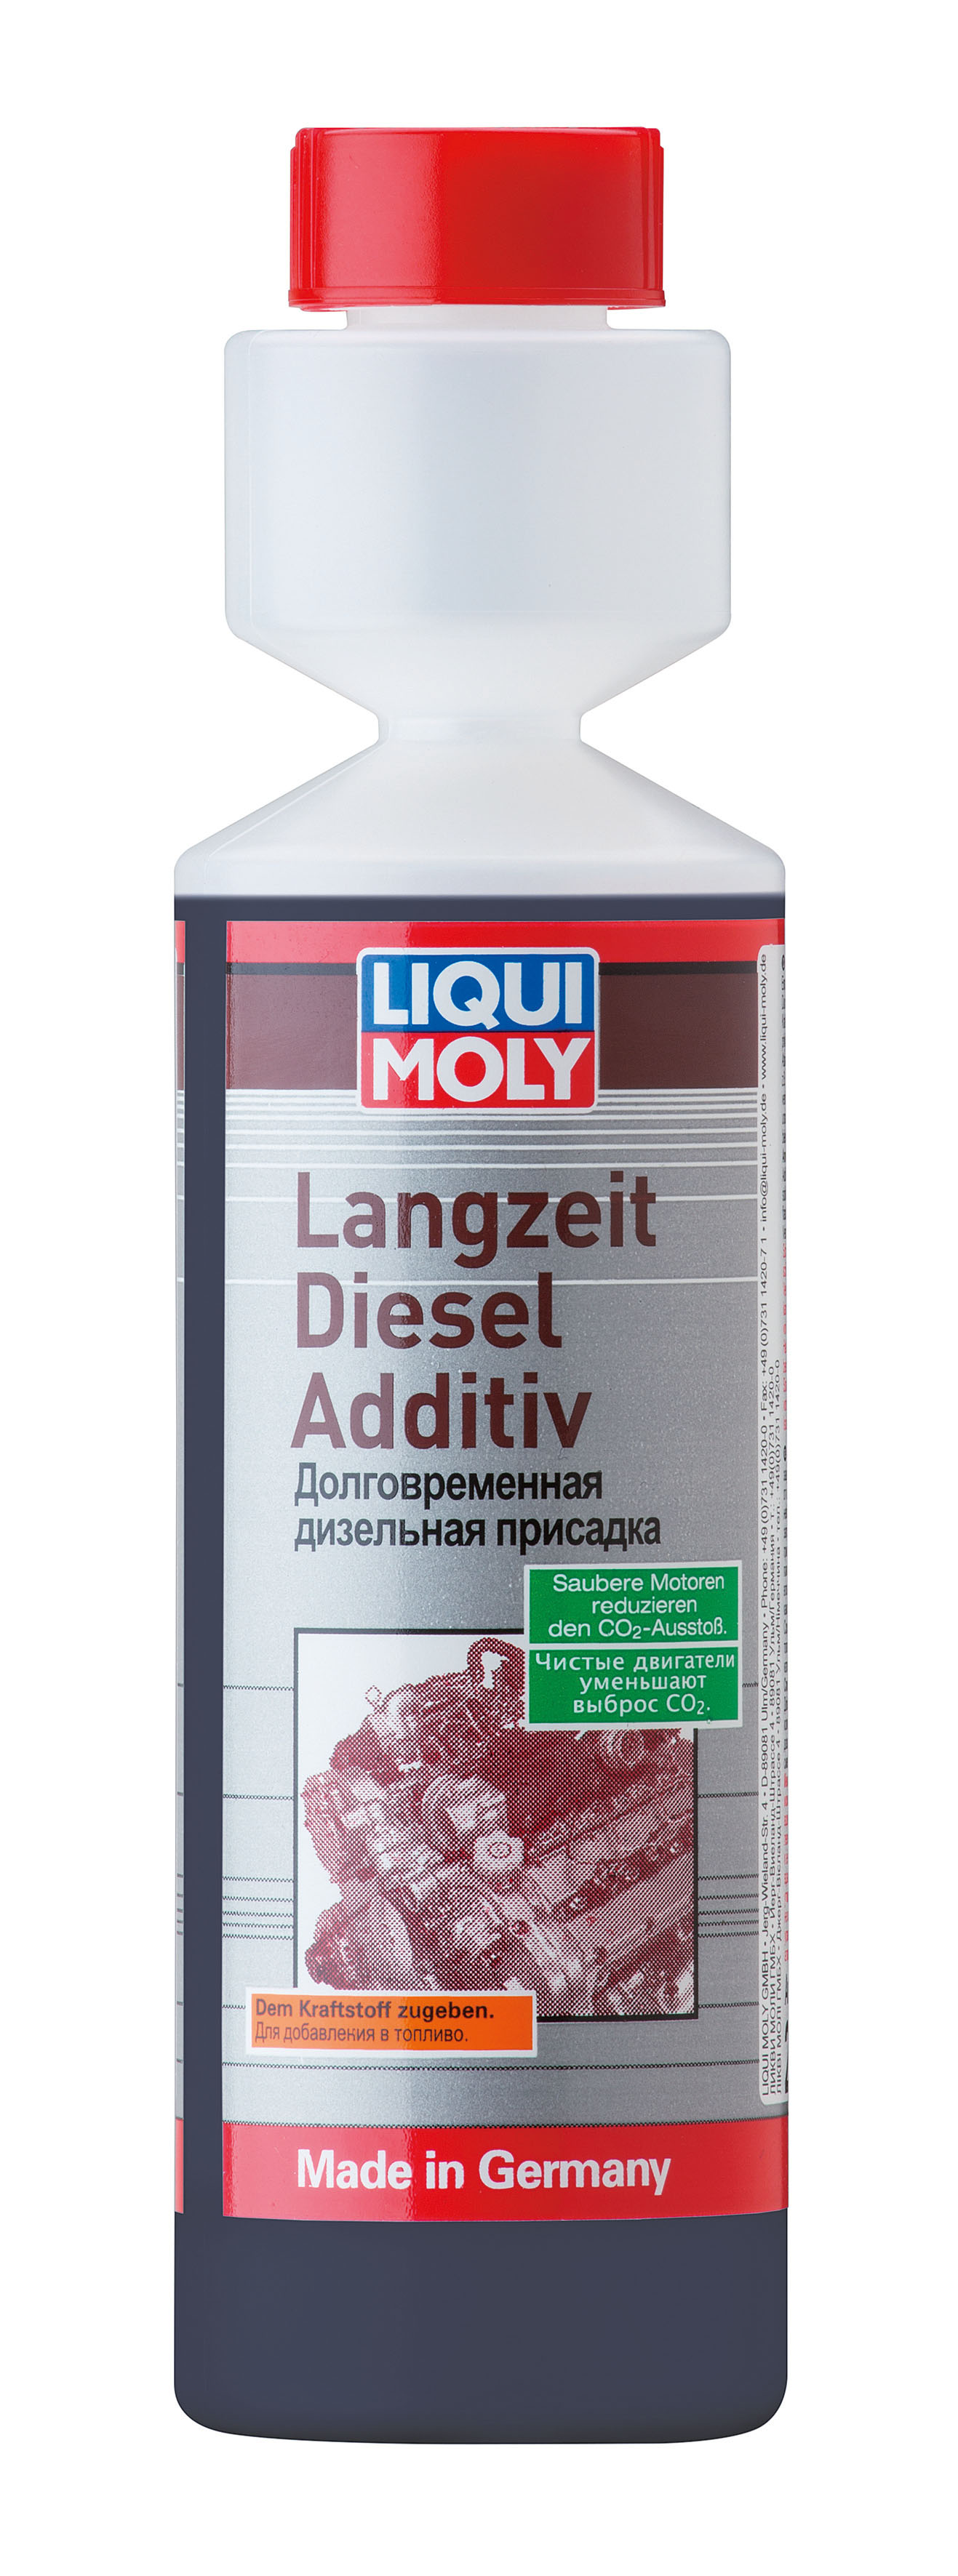 Долговременная дизельная присадка Liqui Moly Langzeit Diesel Additiv